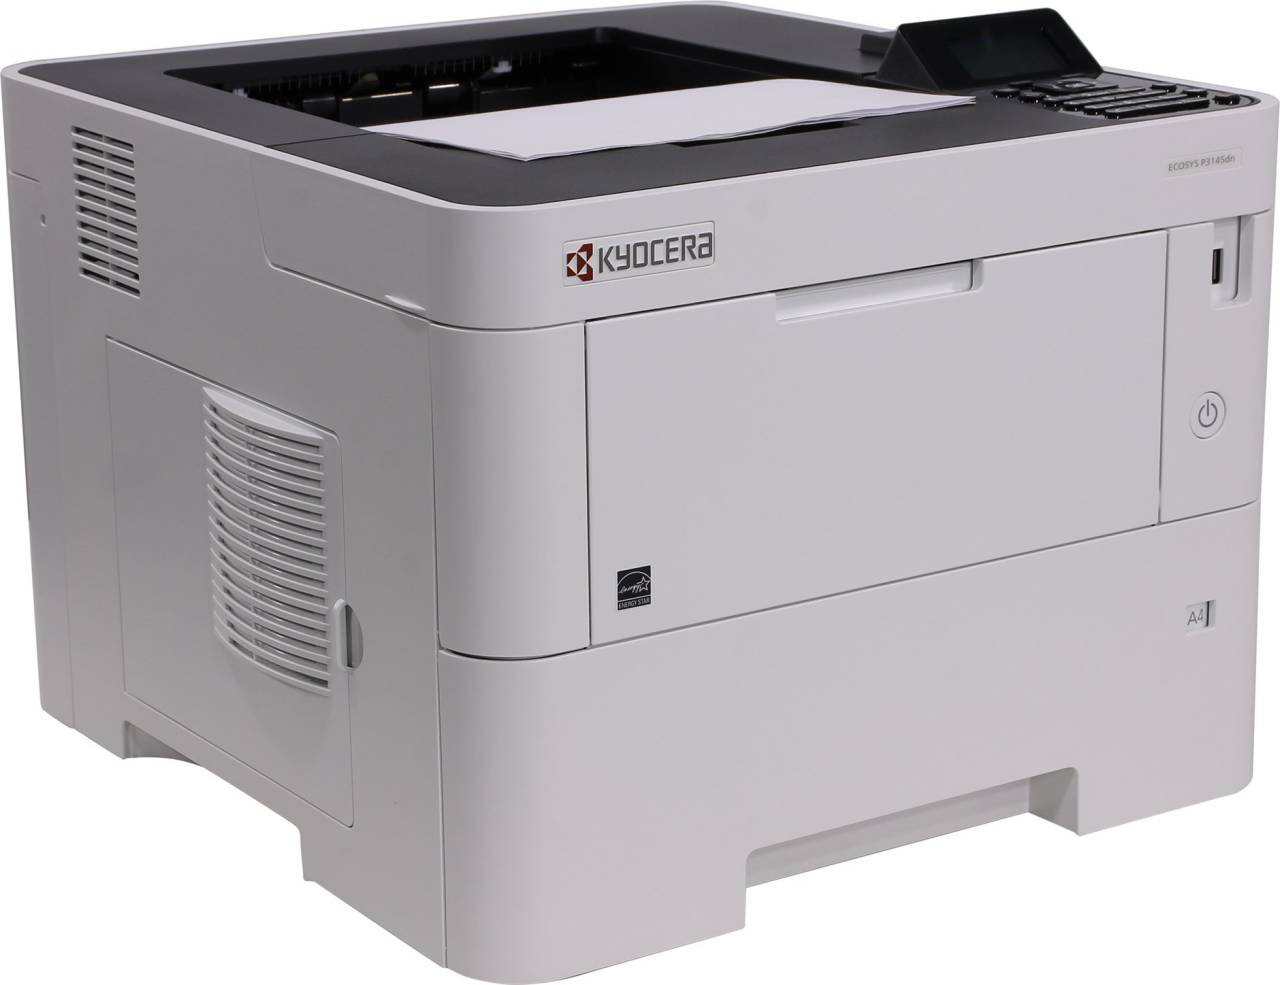 купить Принтер Kyocera Ecosys P3145dn (A4, 45 стр/мин, 512Mb, LCD, USB2.0, сетевой, двуст. печать)